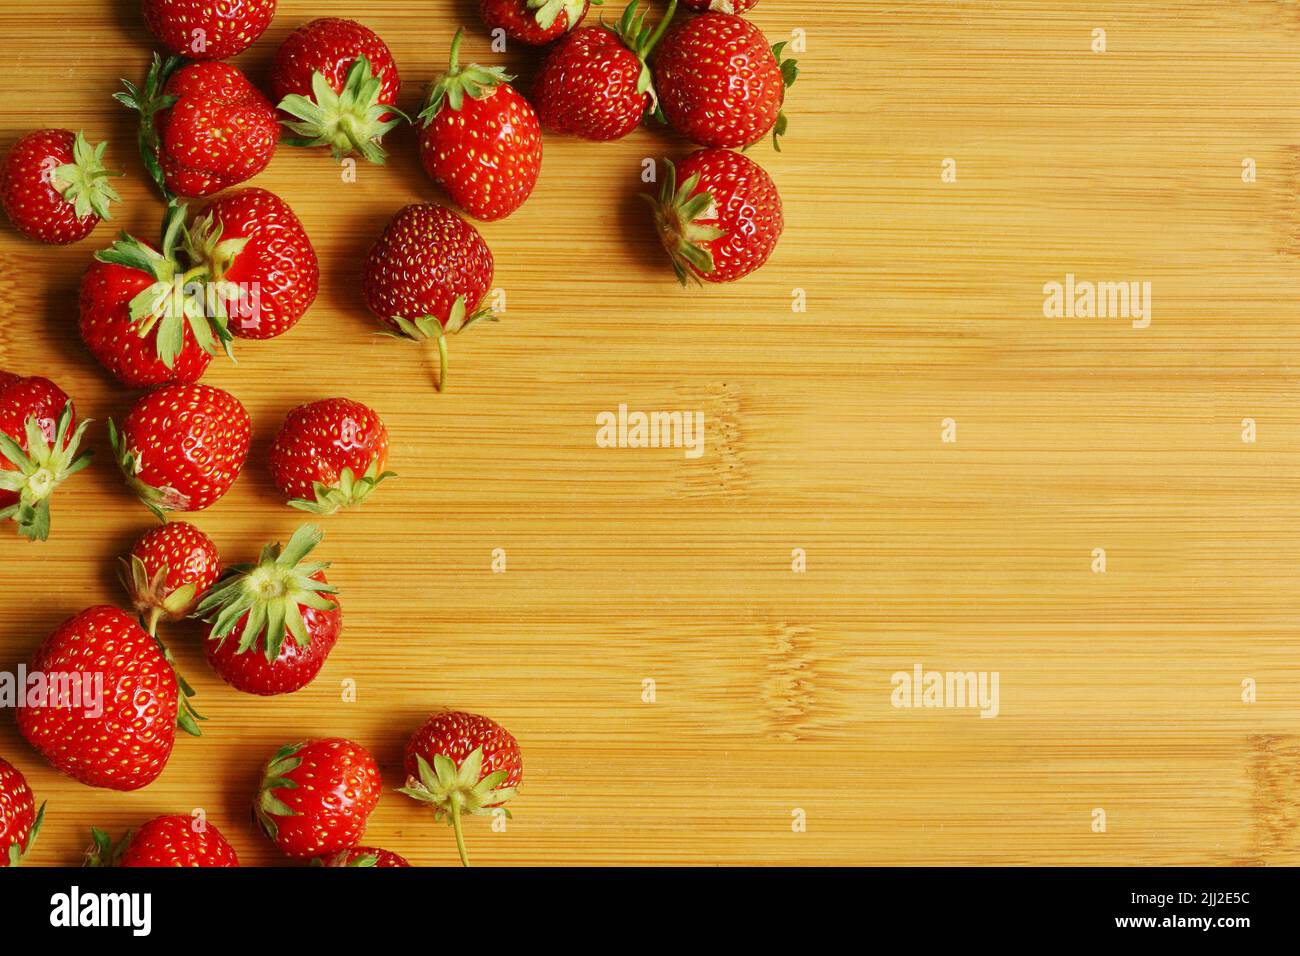 Frische, saftige Bio-Erdbeeren mit Blättern in der runden Glasschale, die auf das Holz-Bambus-Schneidebrett gelegt wird. Zutaten für Marmelade, Kuchen, Dess Stockfoto